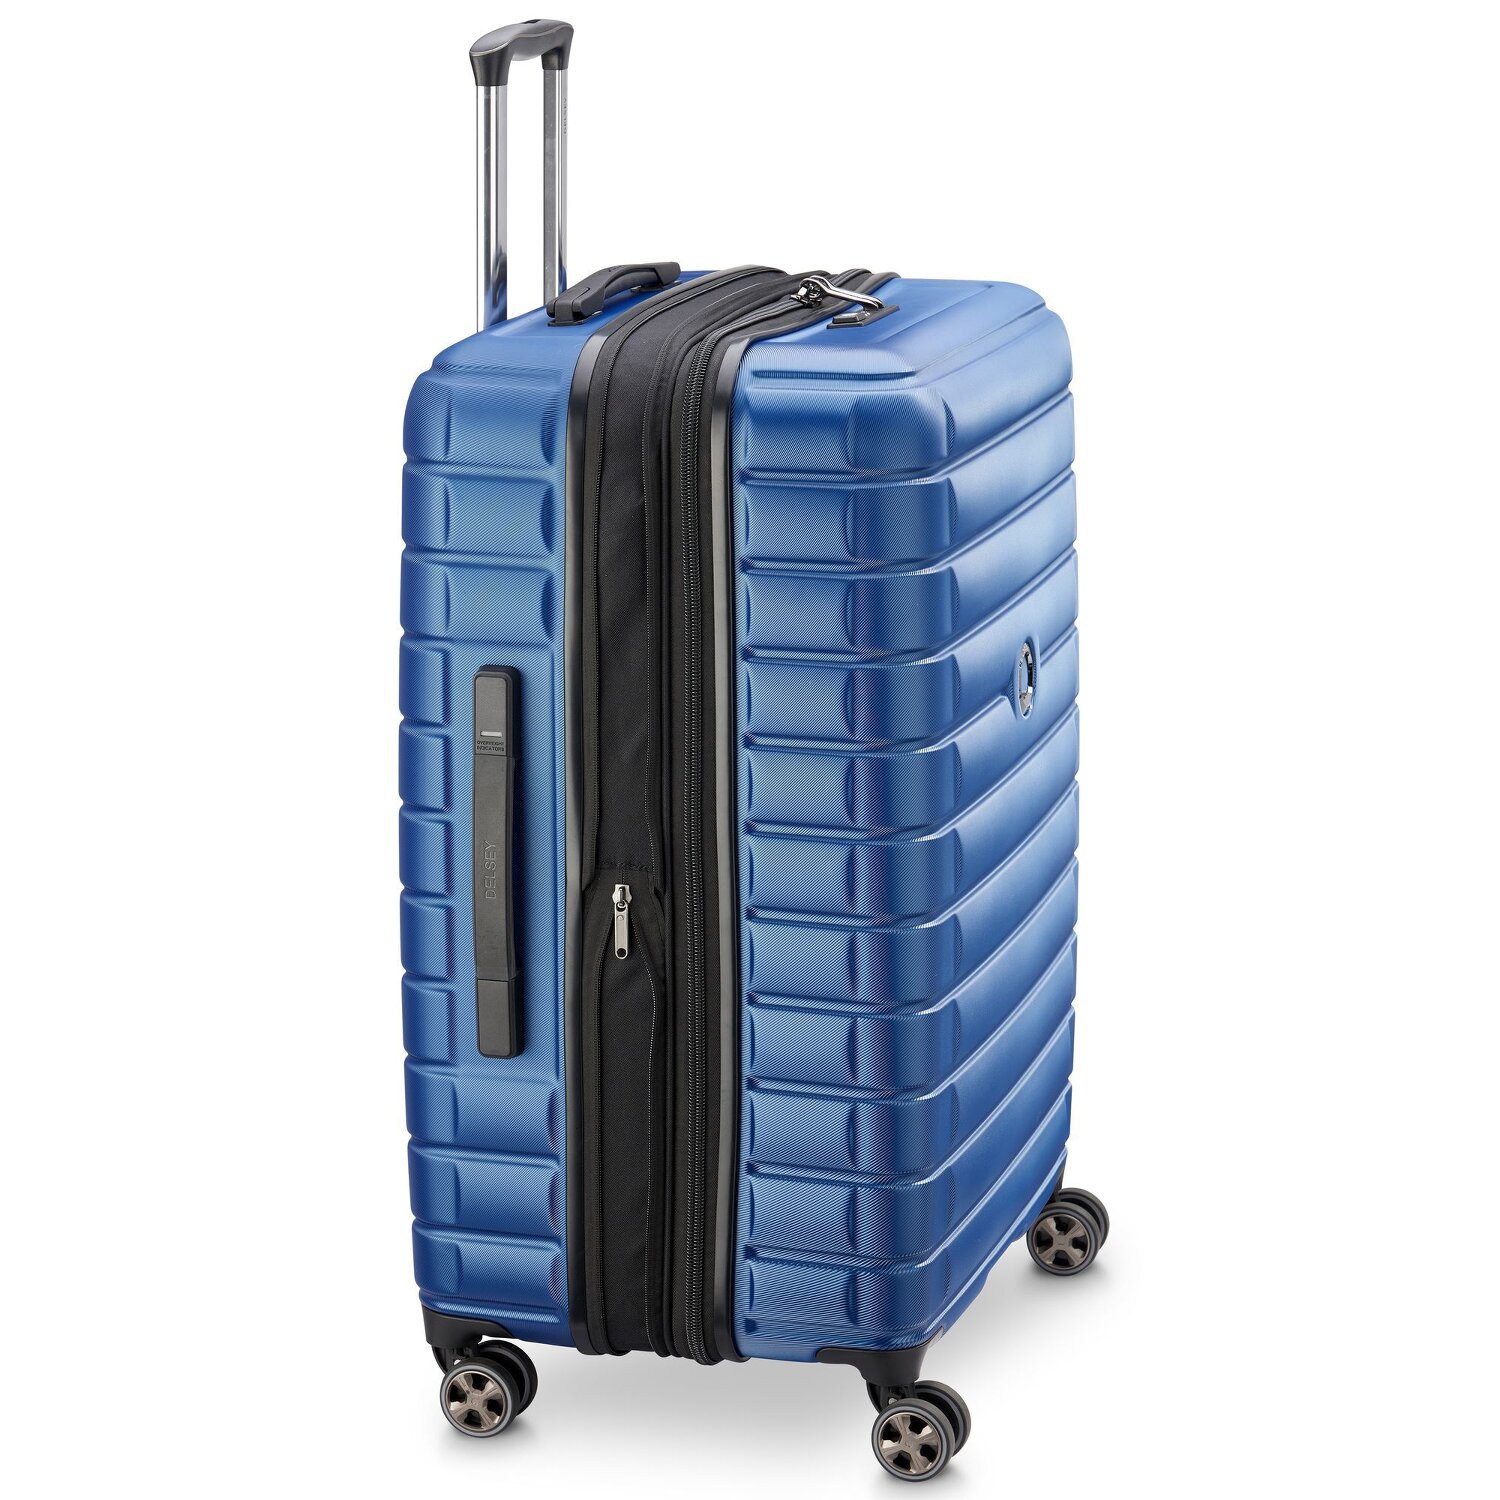 Delsey Shadow 5.0 valise à roulettes cabine 4 roues 55 cm blau